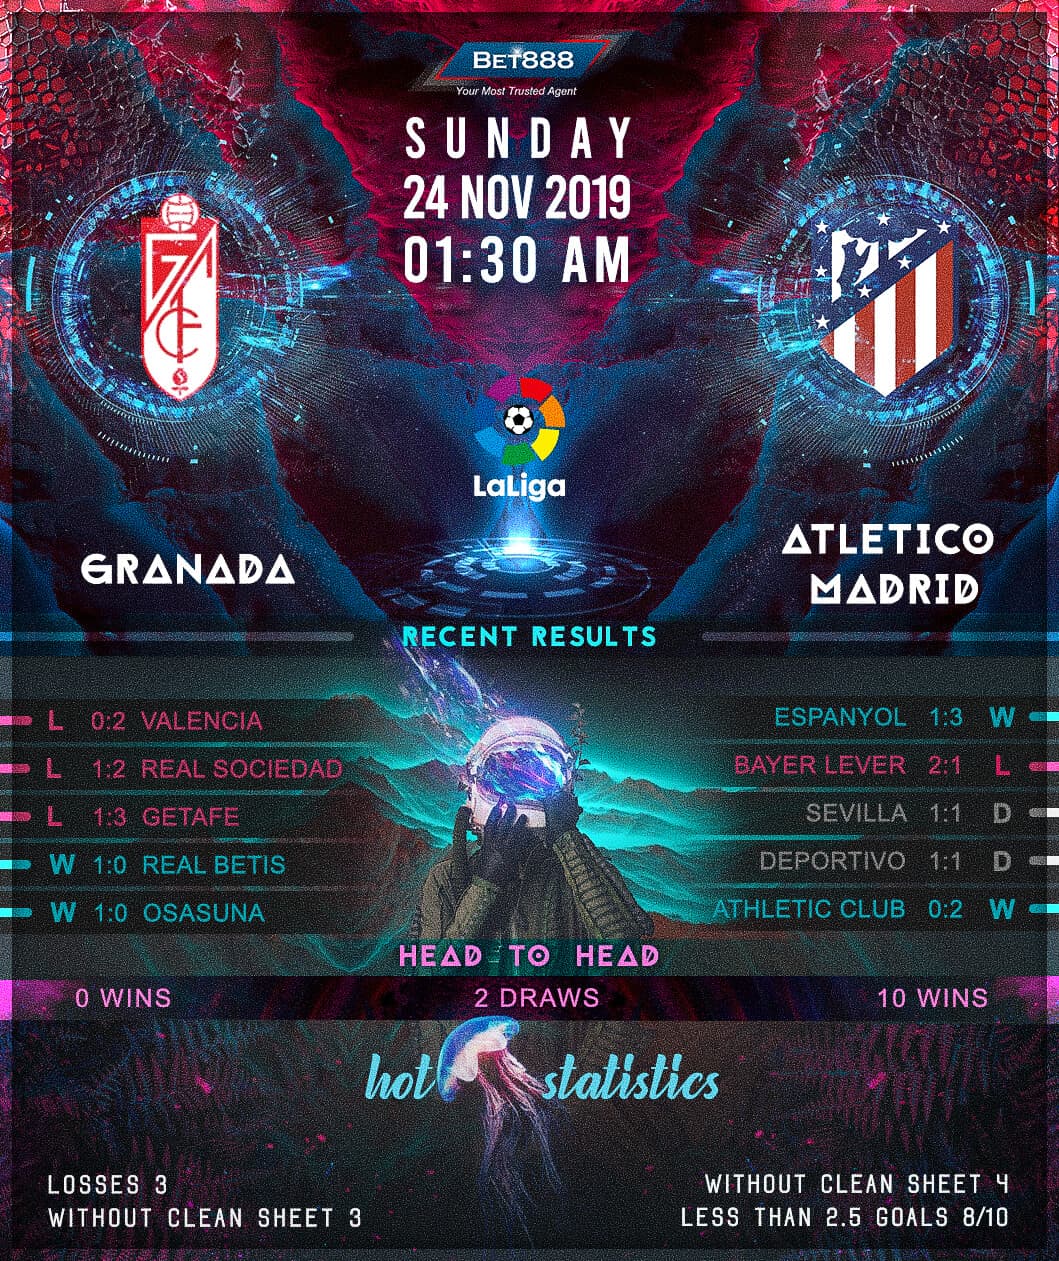 Granada vs Atletico Madrid 24/11/19